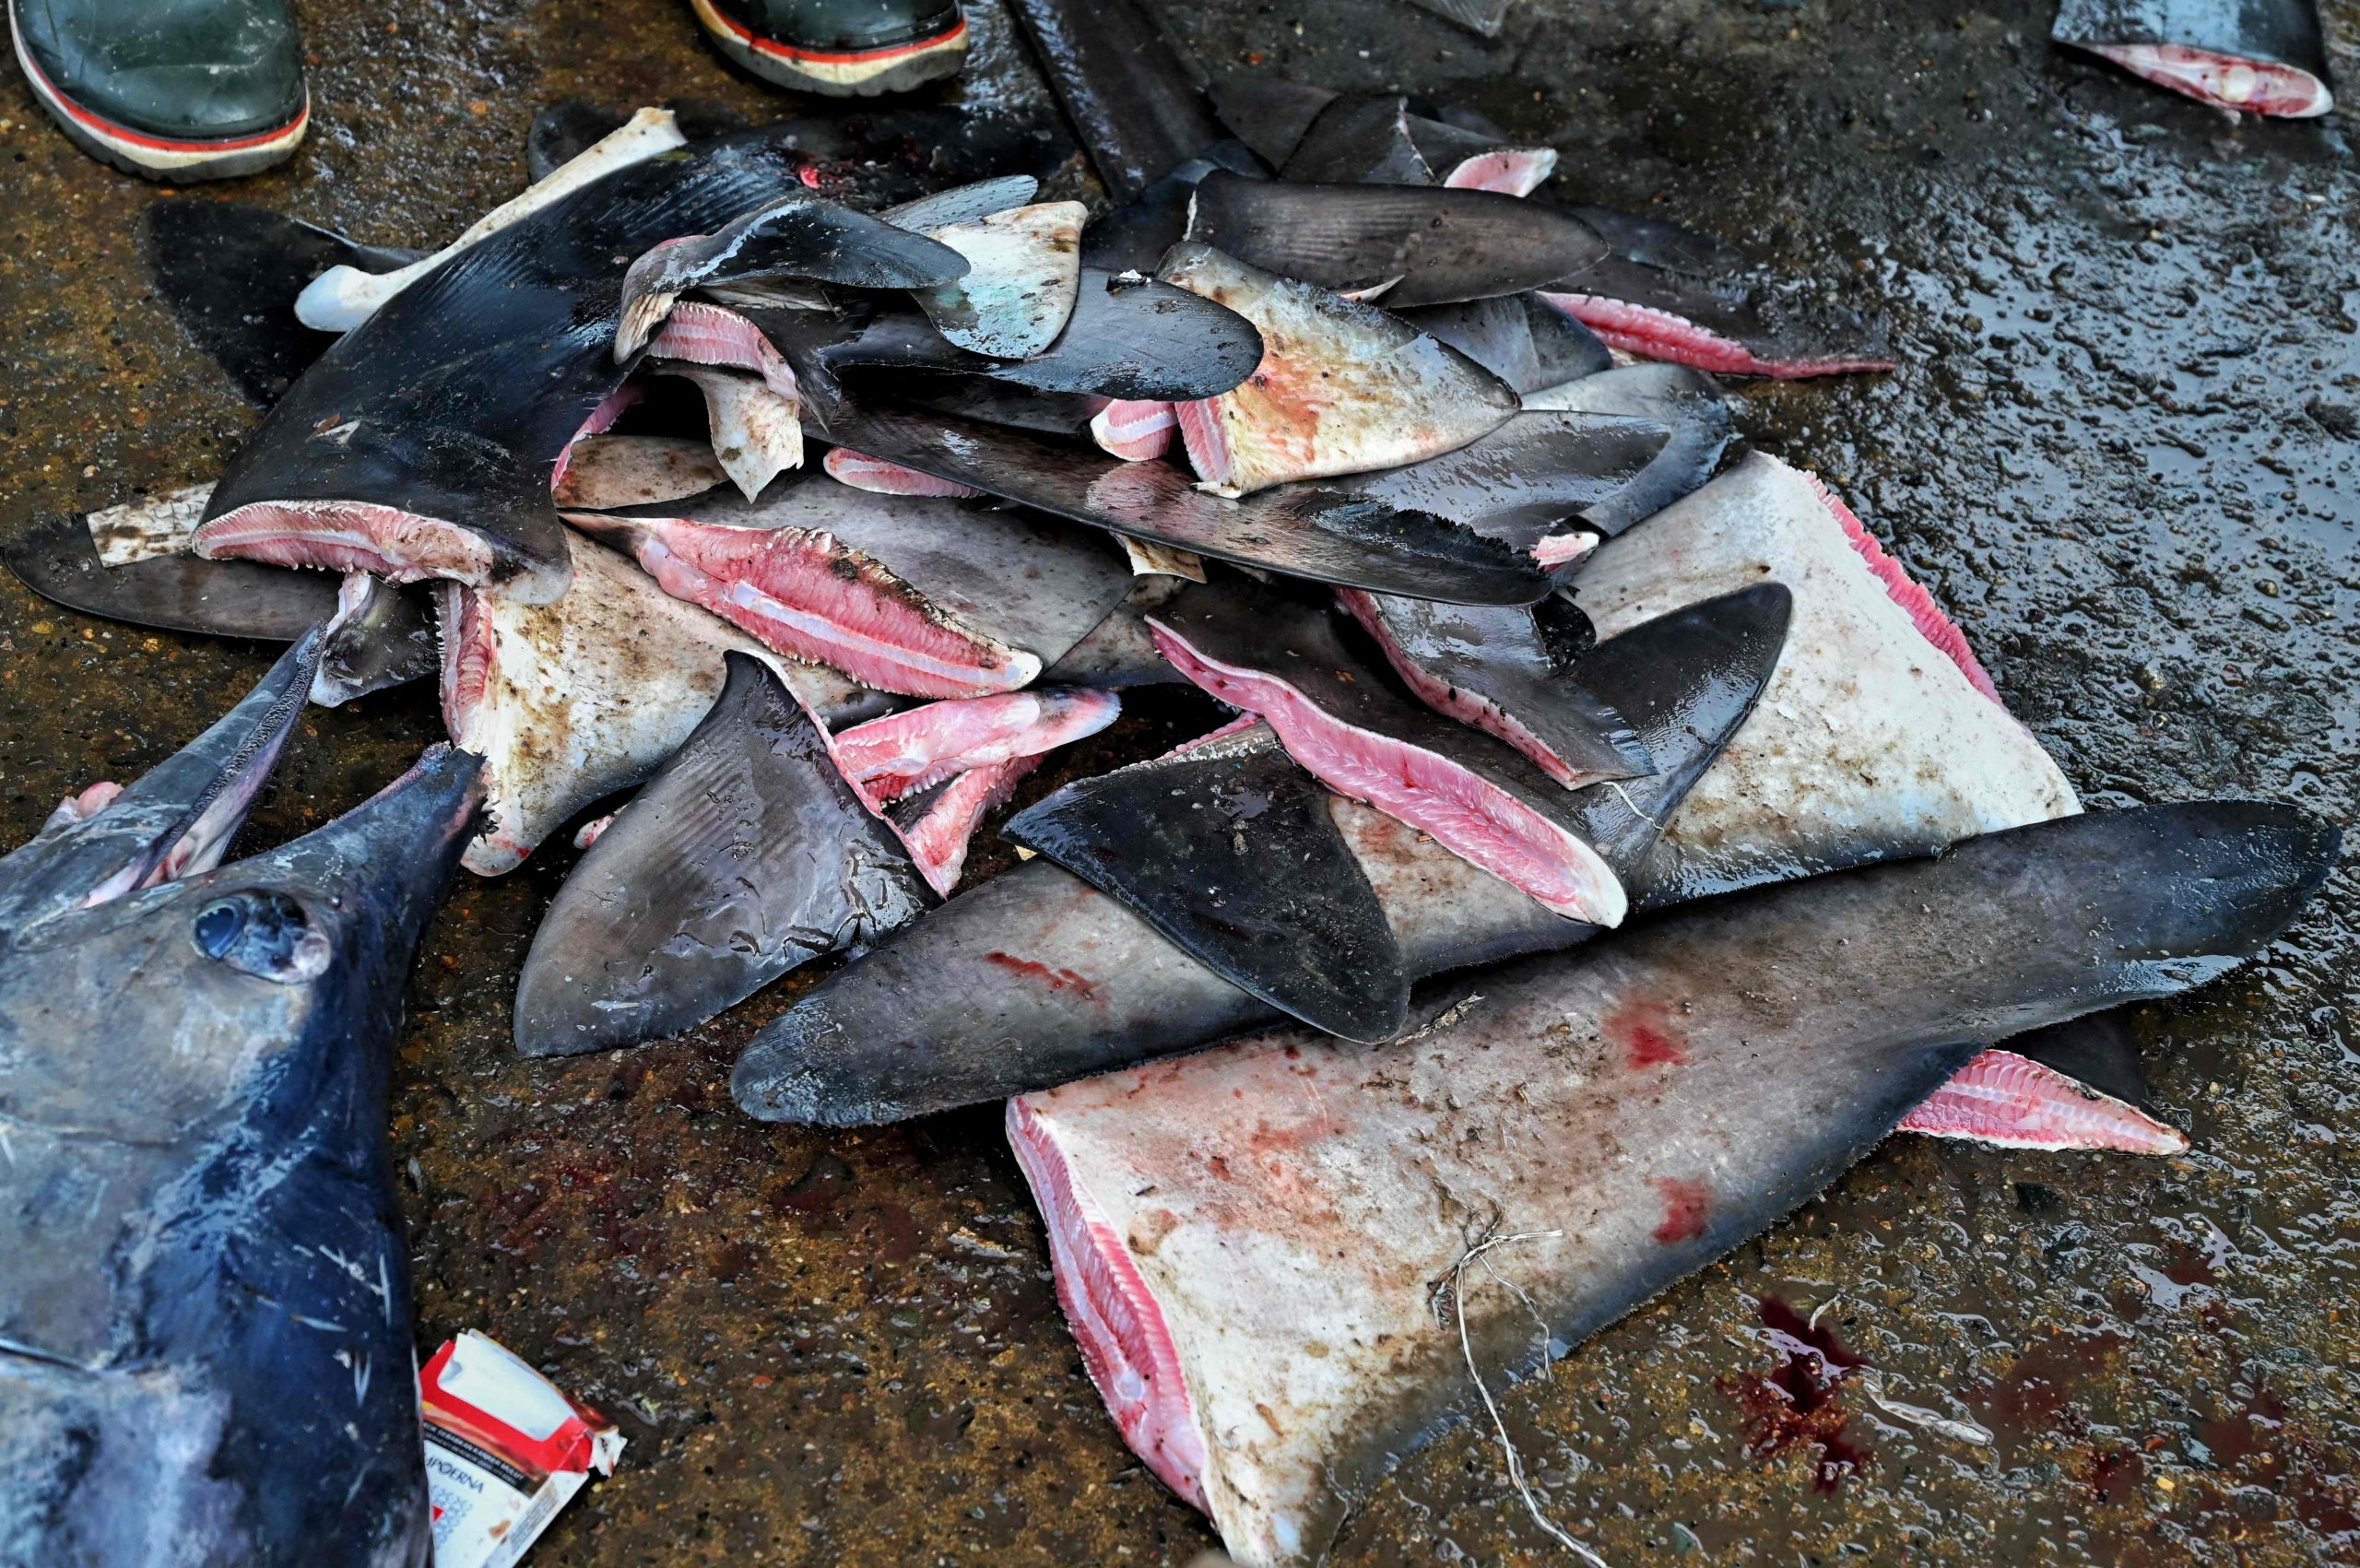 全球野生动物峰会通过保护多种鲨鱼 减少鱼翅贸易